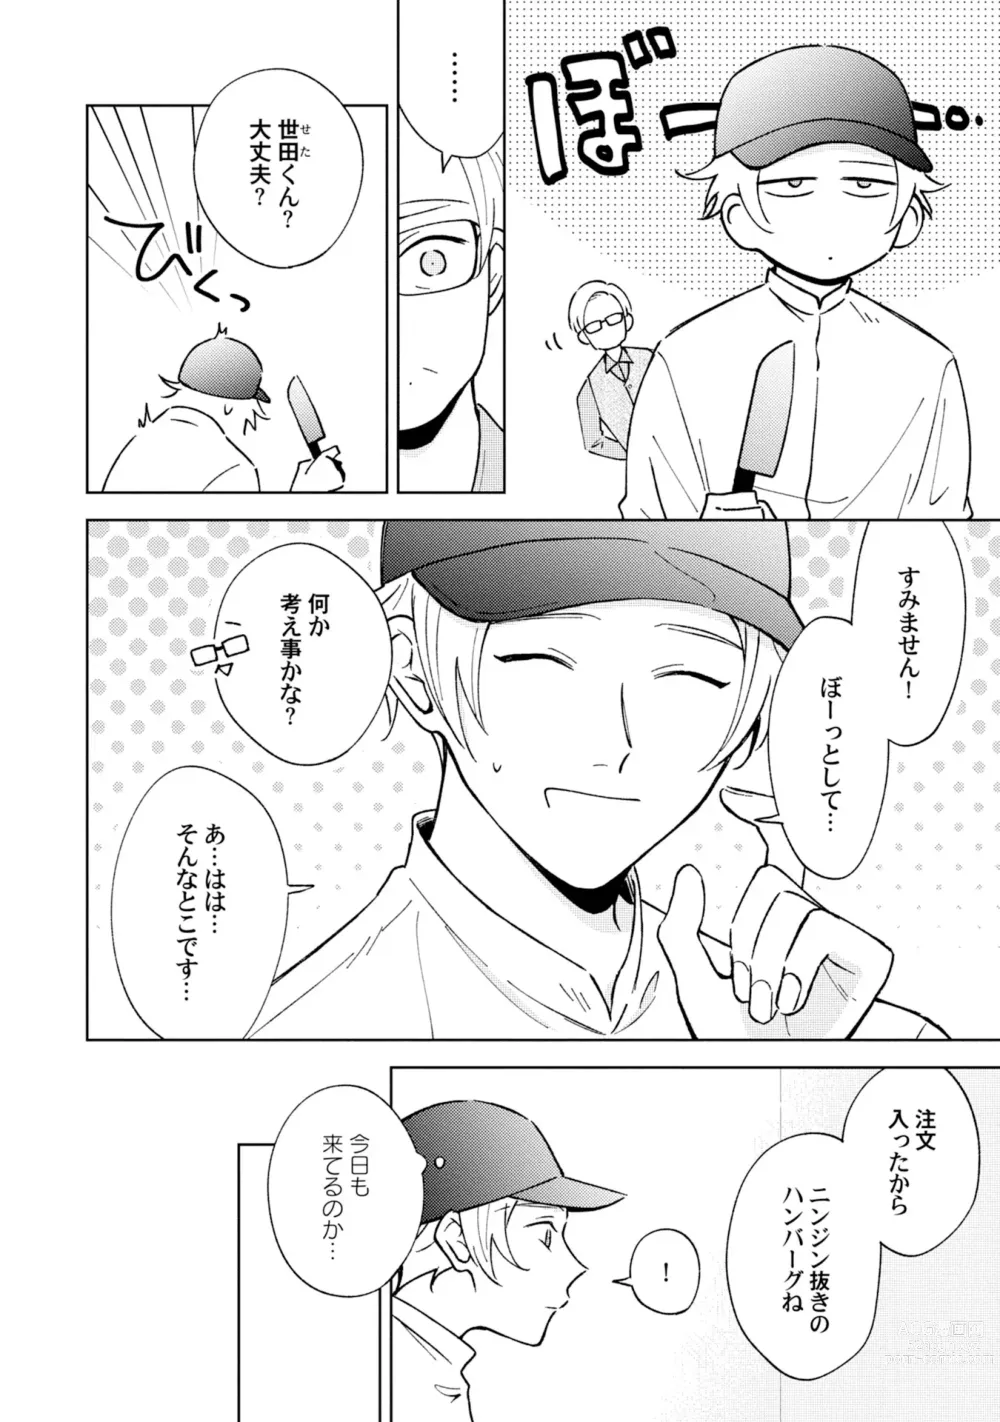 Page 8 of manga Toho 3-byou no Trouble Love Room 2